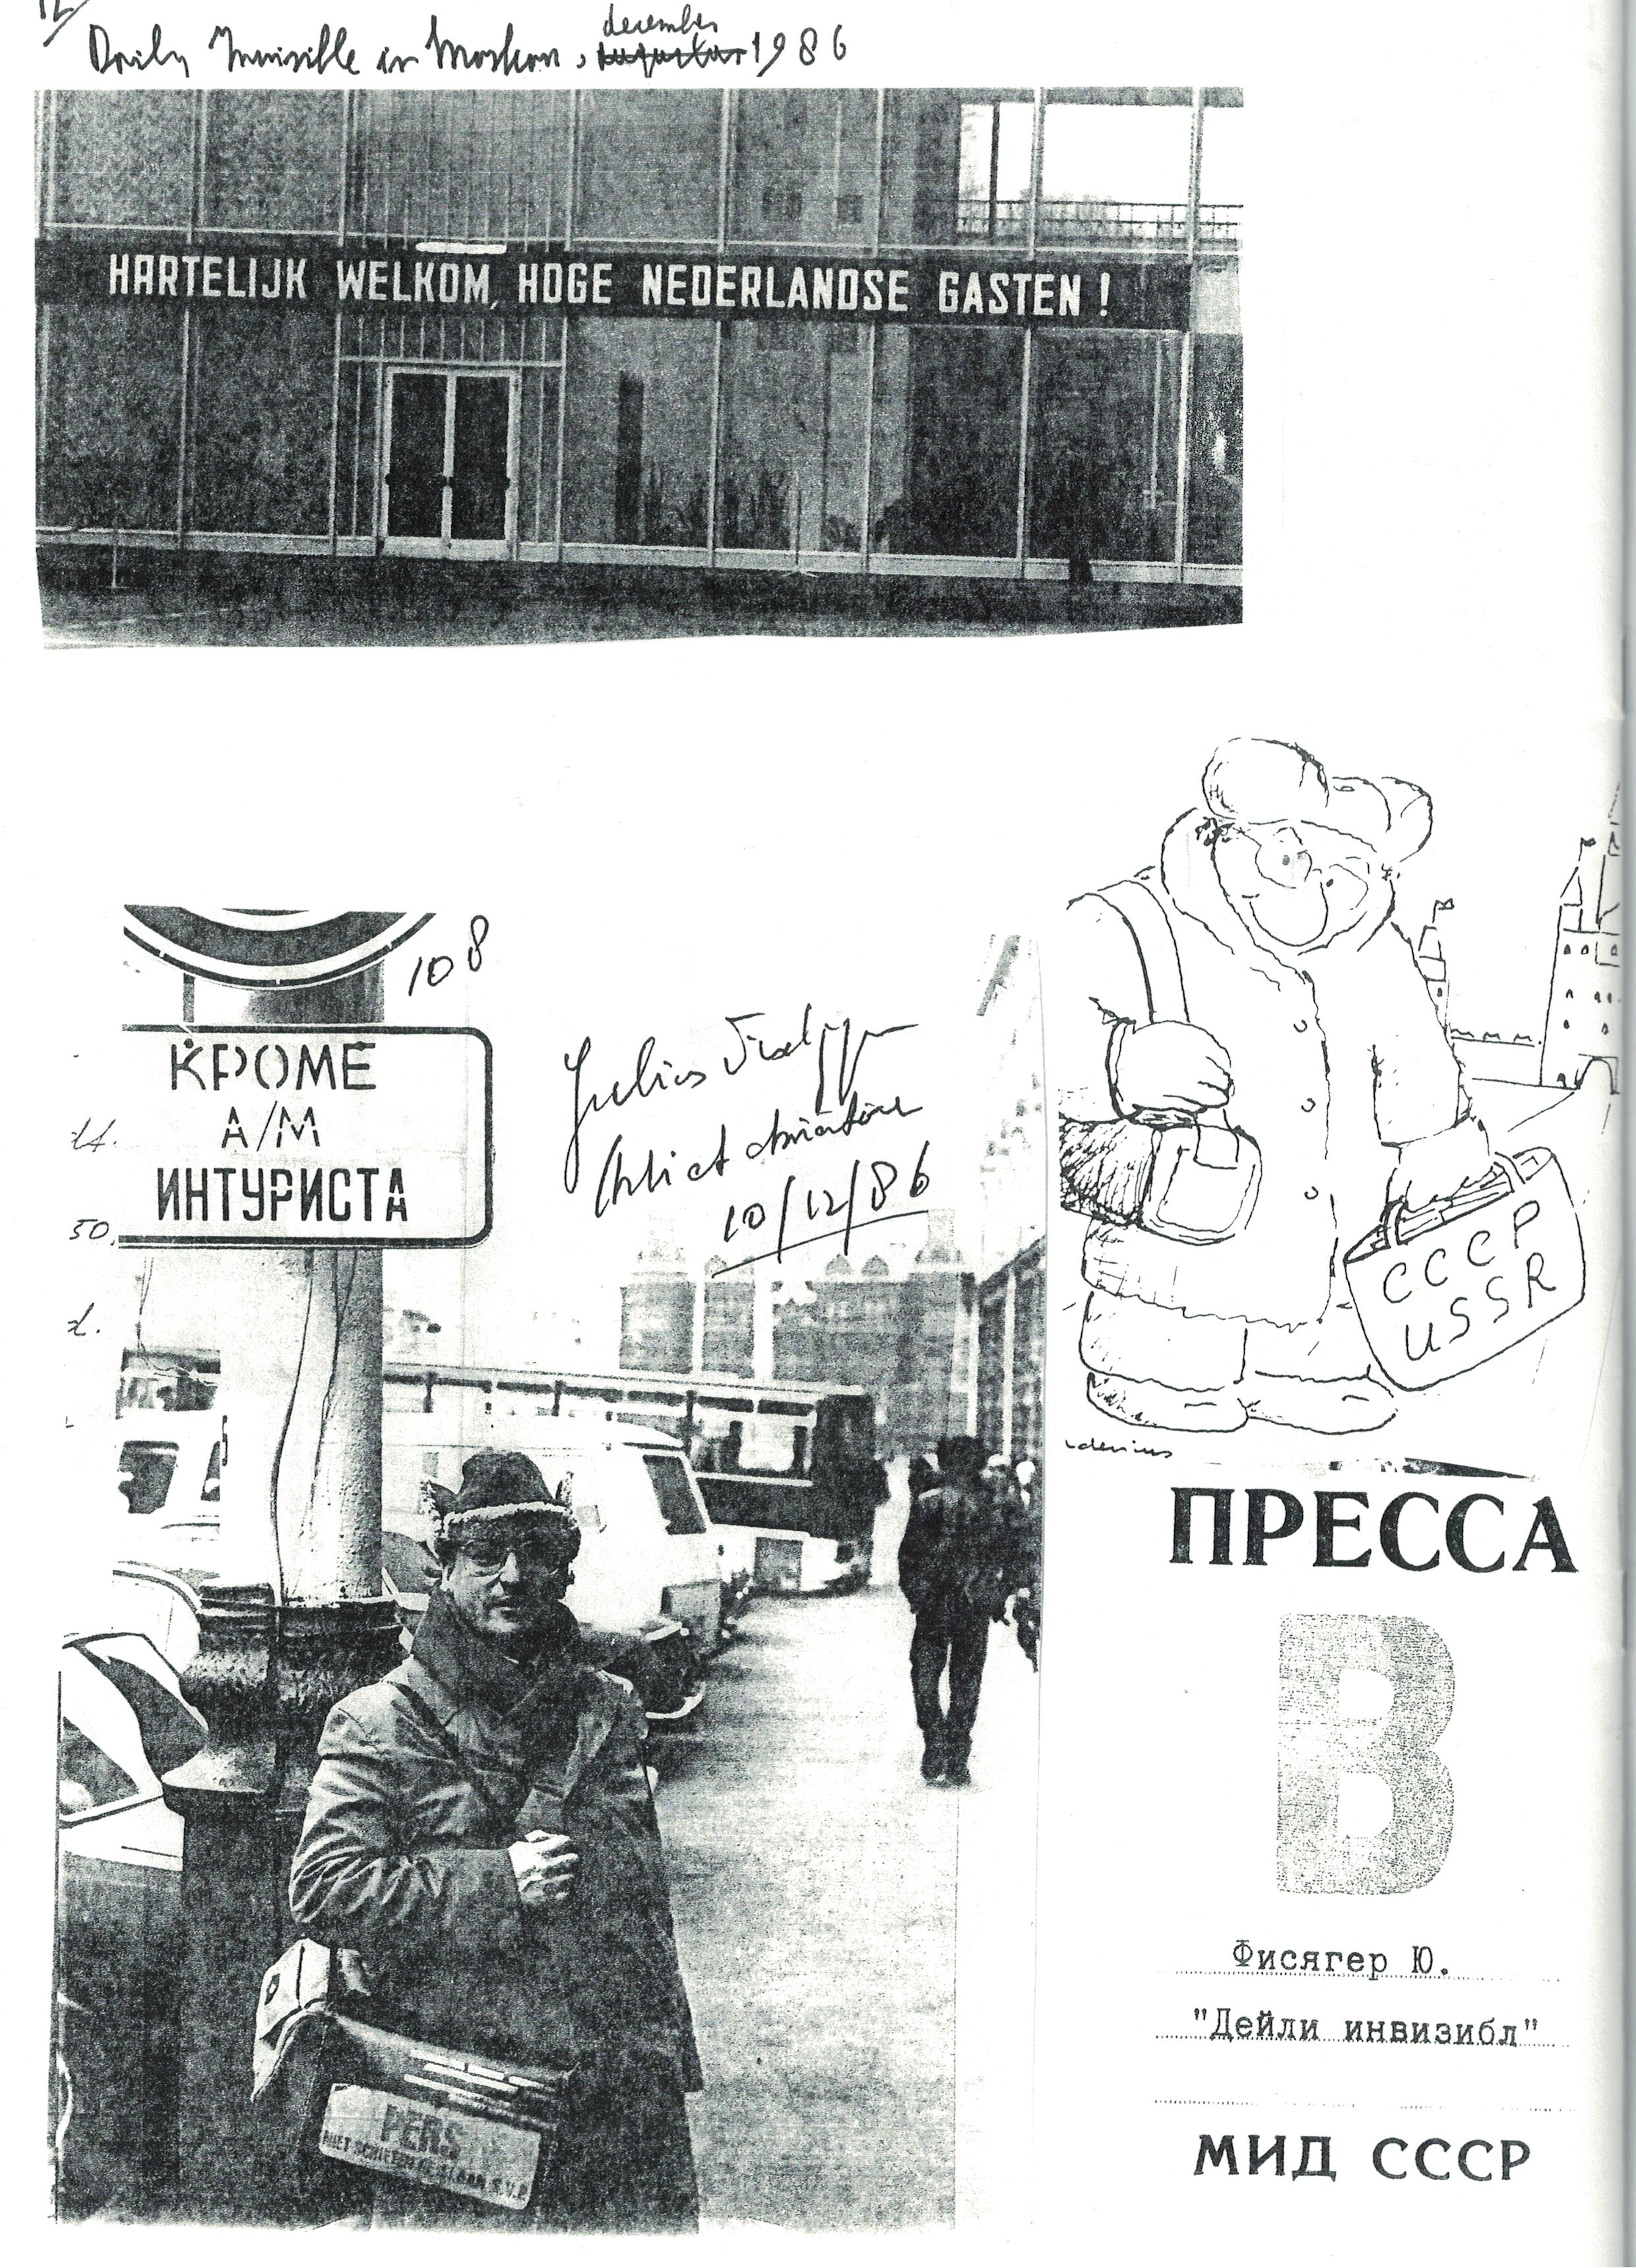 P12: TDI in Moskou, 1986